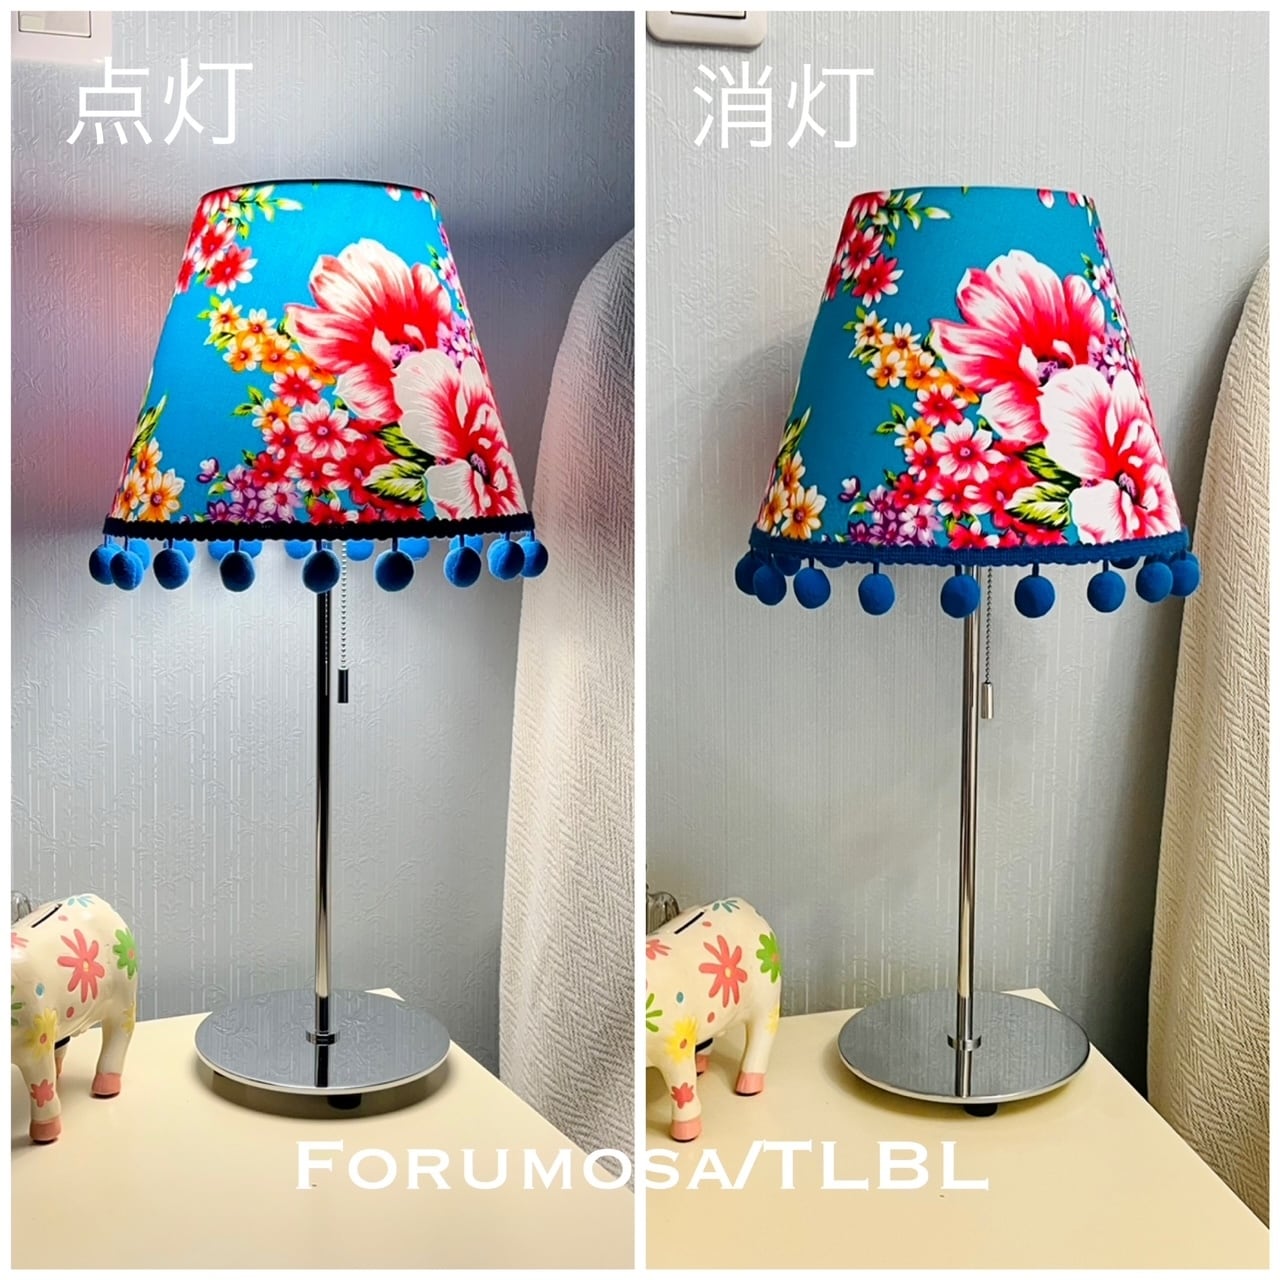 テーブルライト Forumosa/TLPK スイッチ付 LED電球 常夜灯電球付